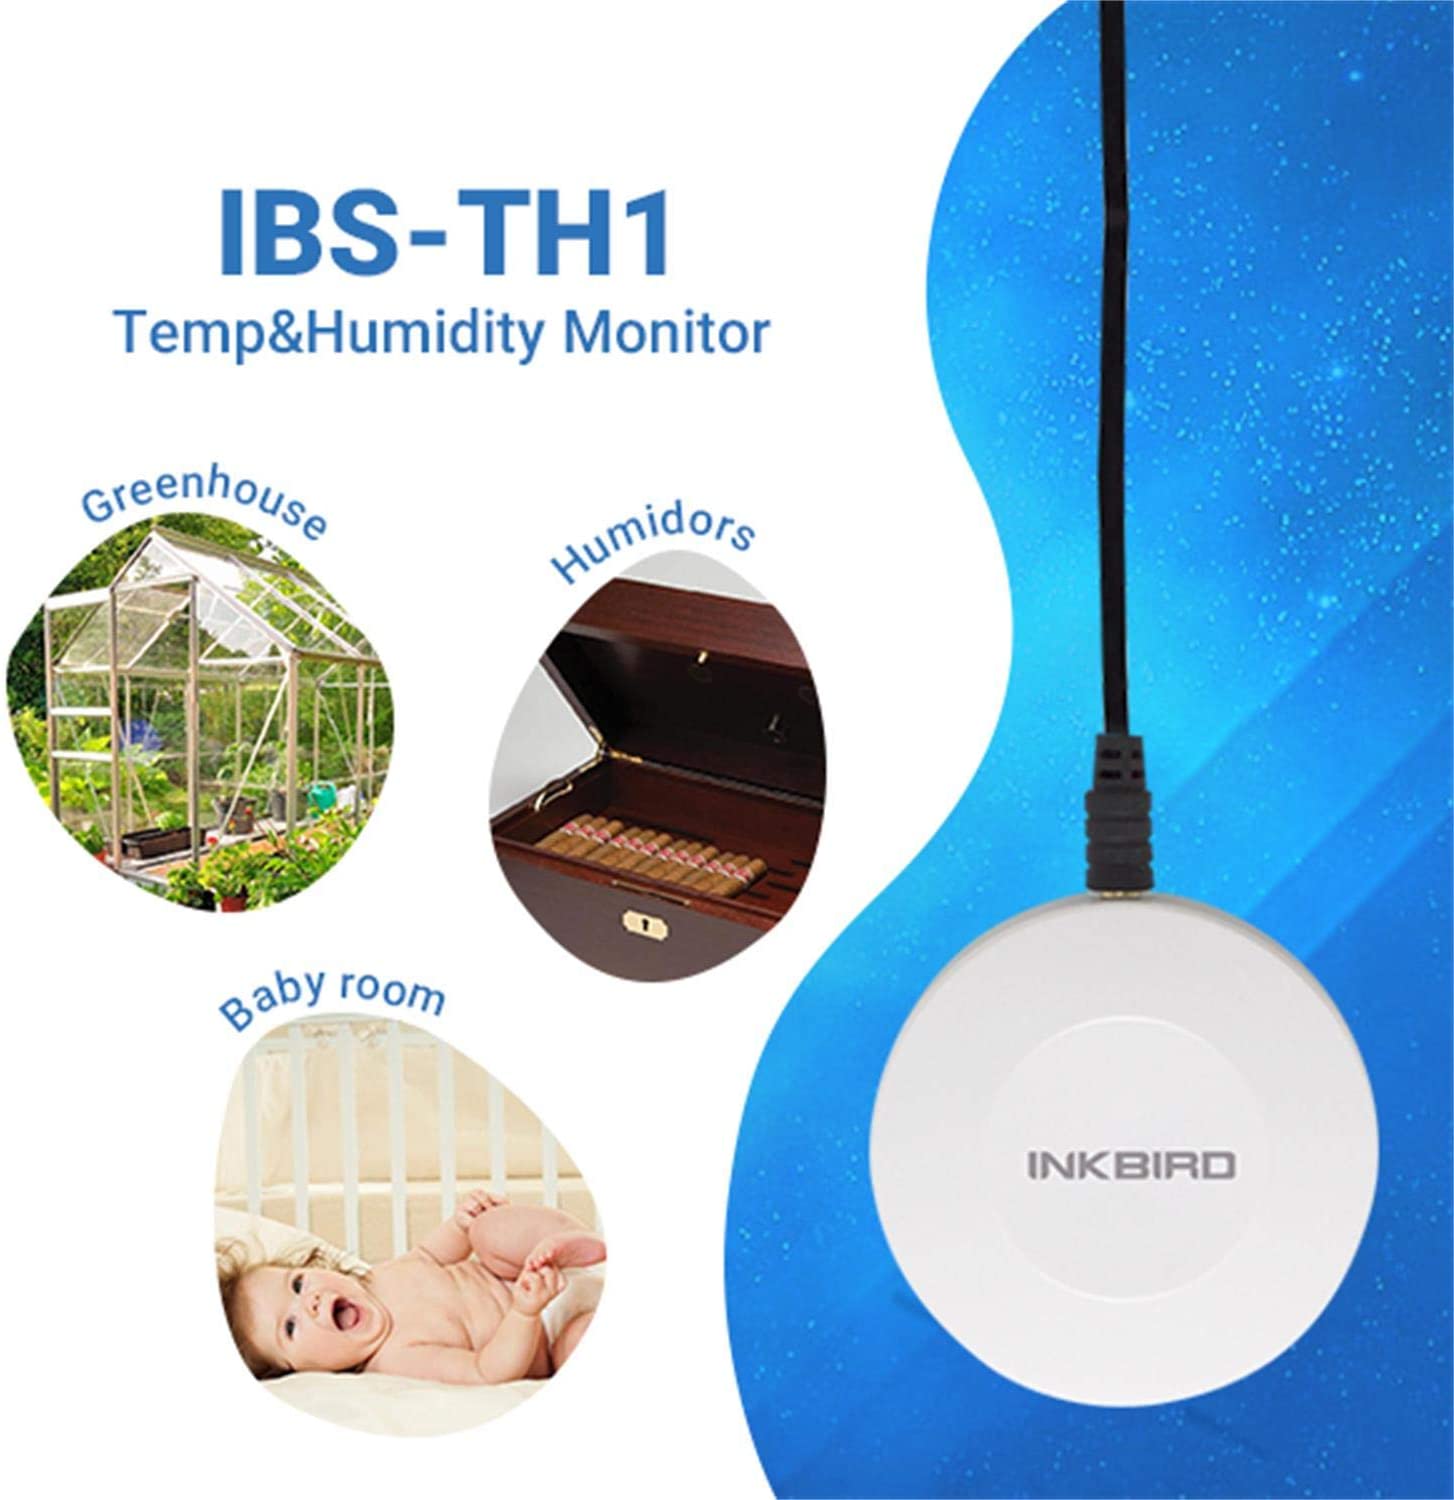 External Temperature / Humidity Sensor